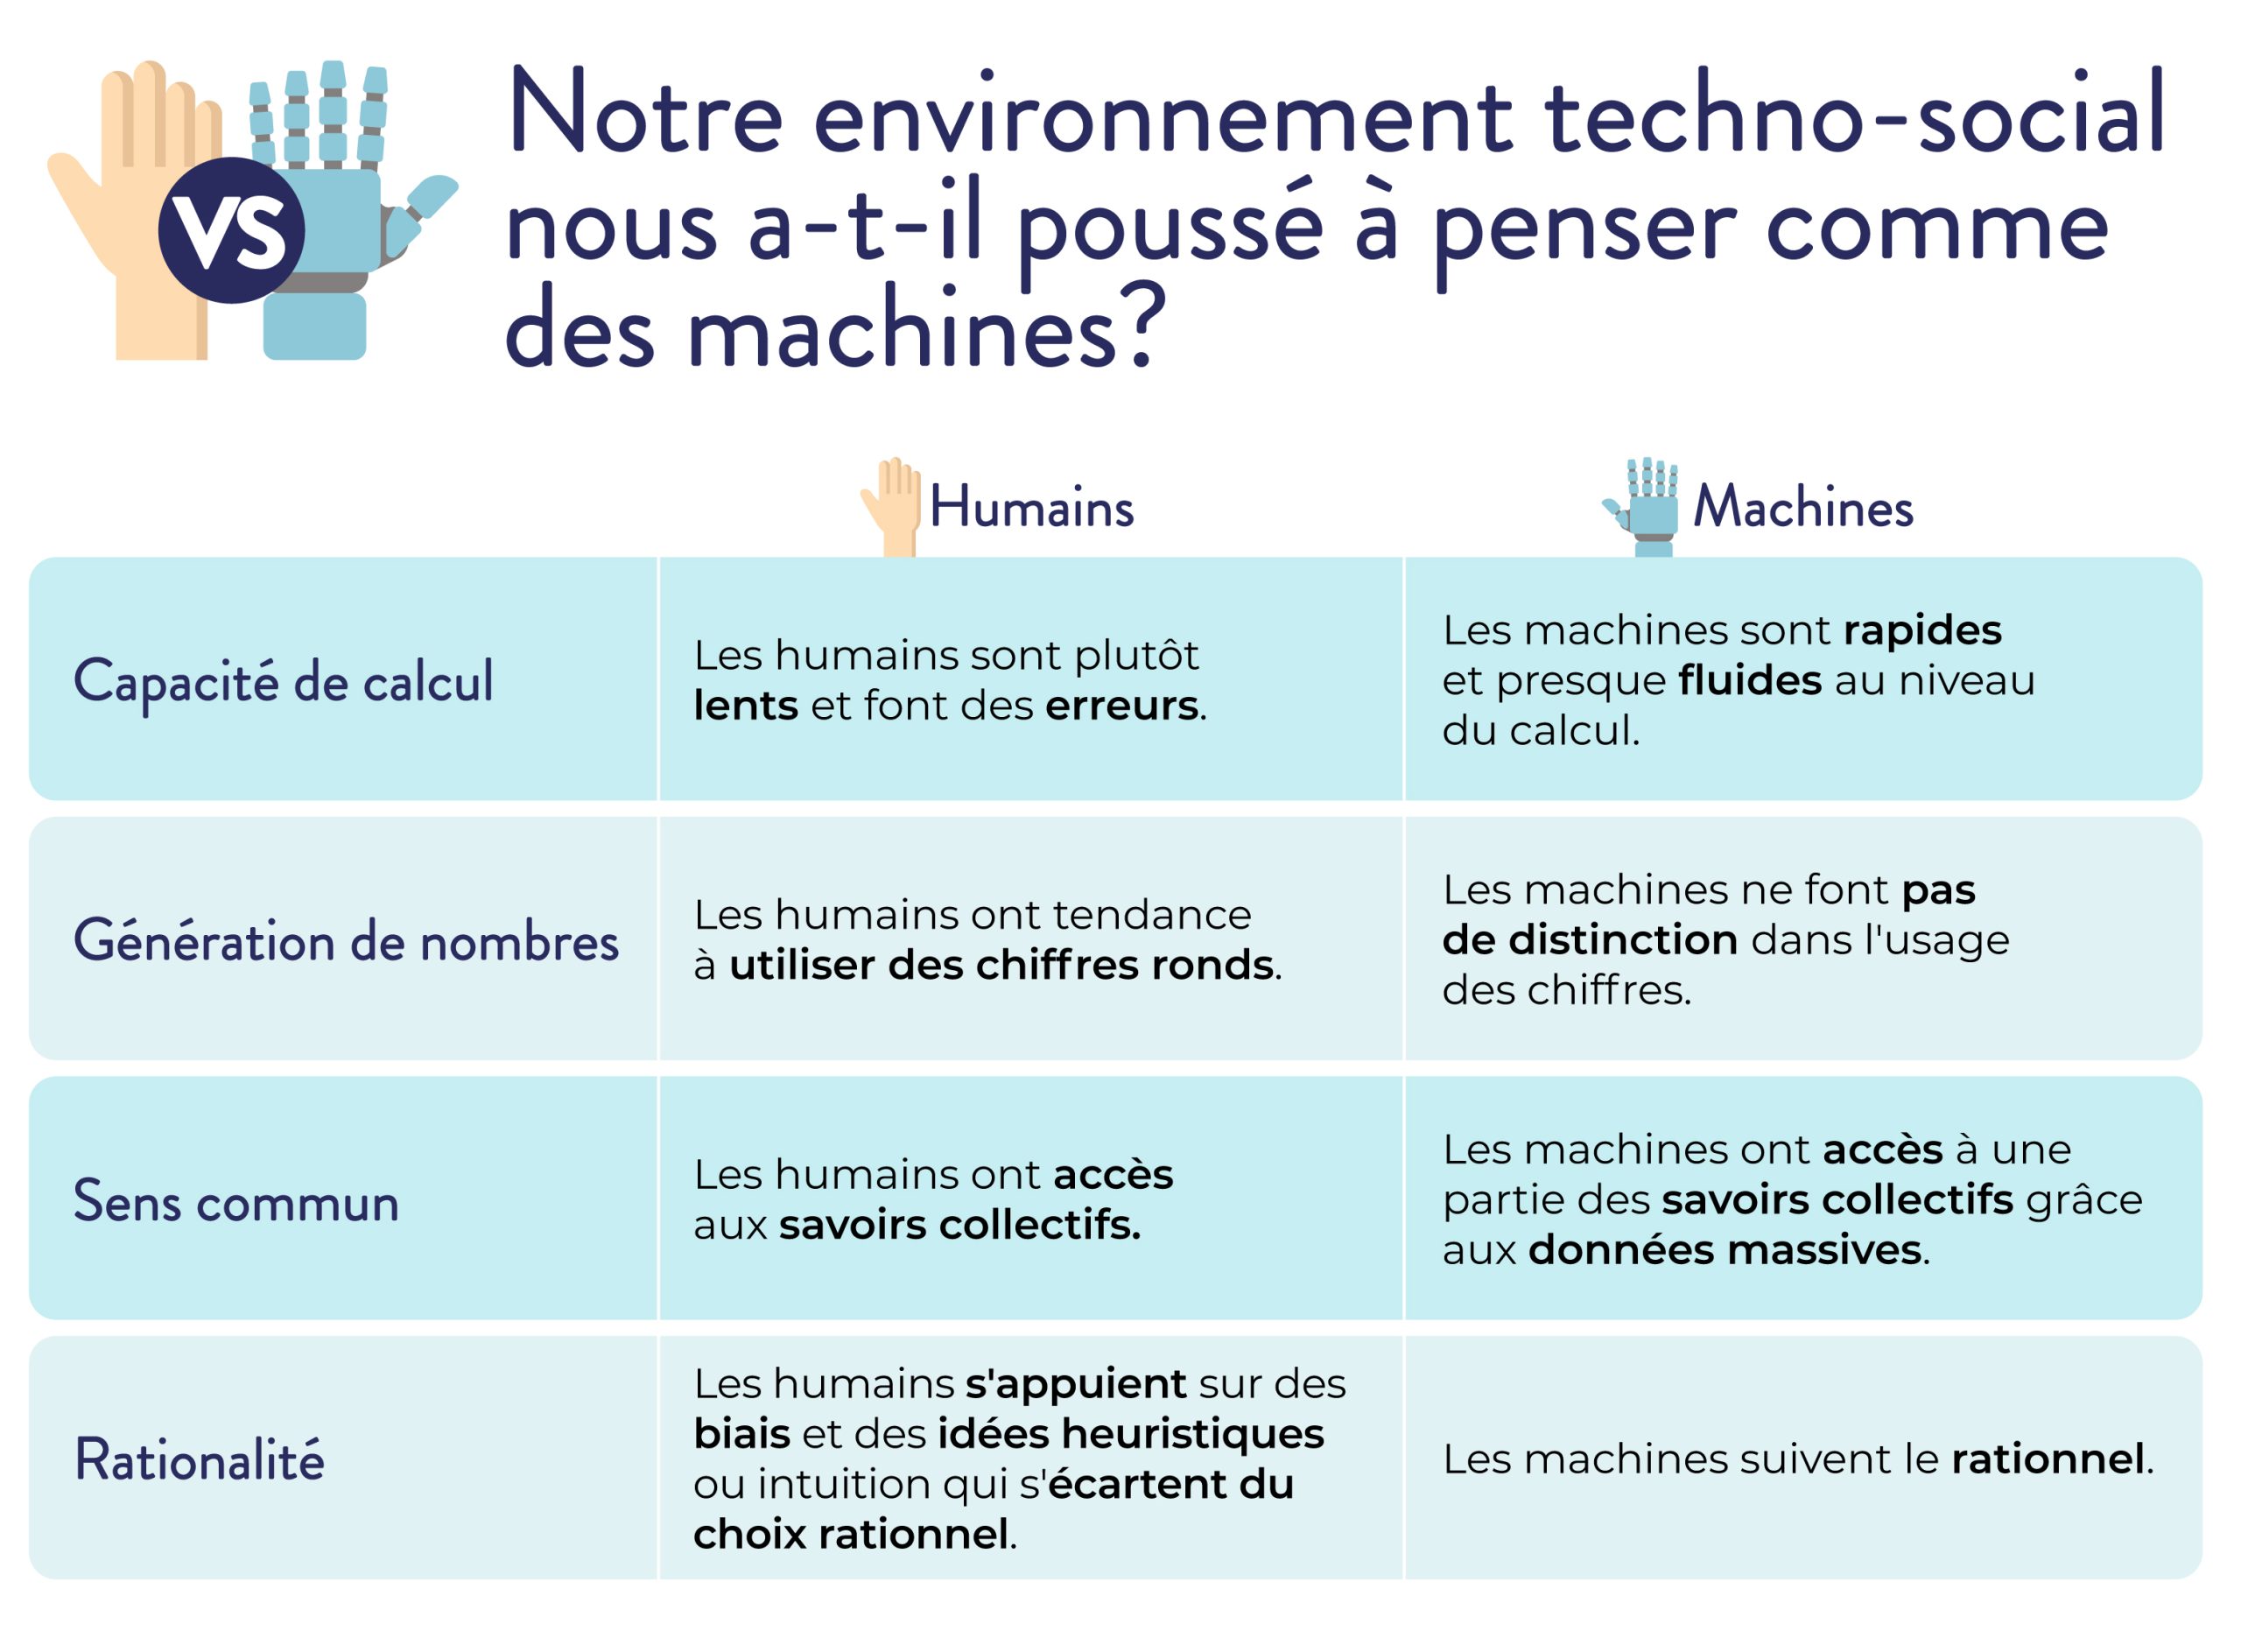 "Notre environnement technico-social nous a-t-il poussé à penser comme des machines?" Un tableau compare les humains et les machines.